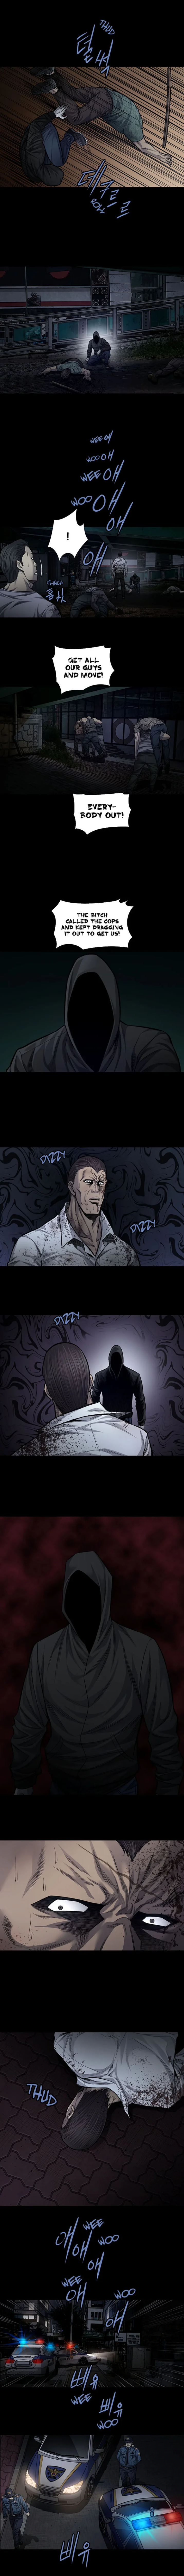 Vigilante - Chapter 71 Page 2